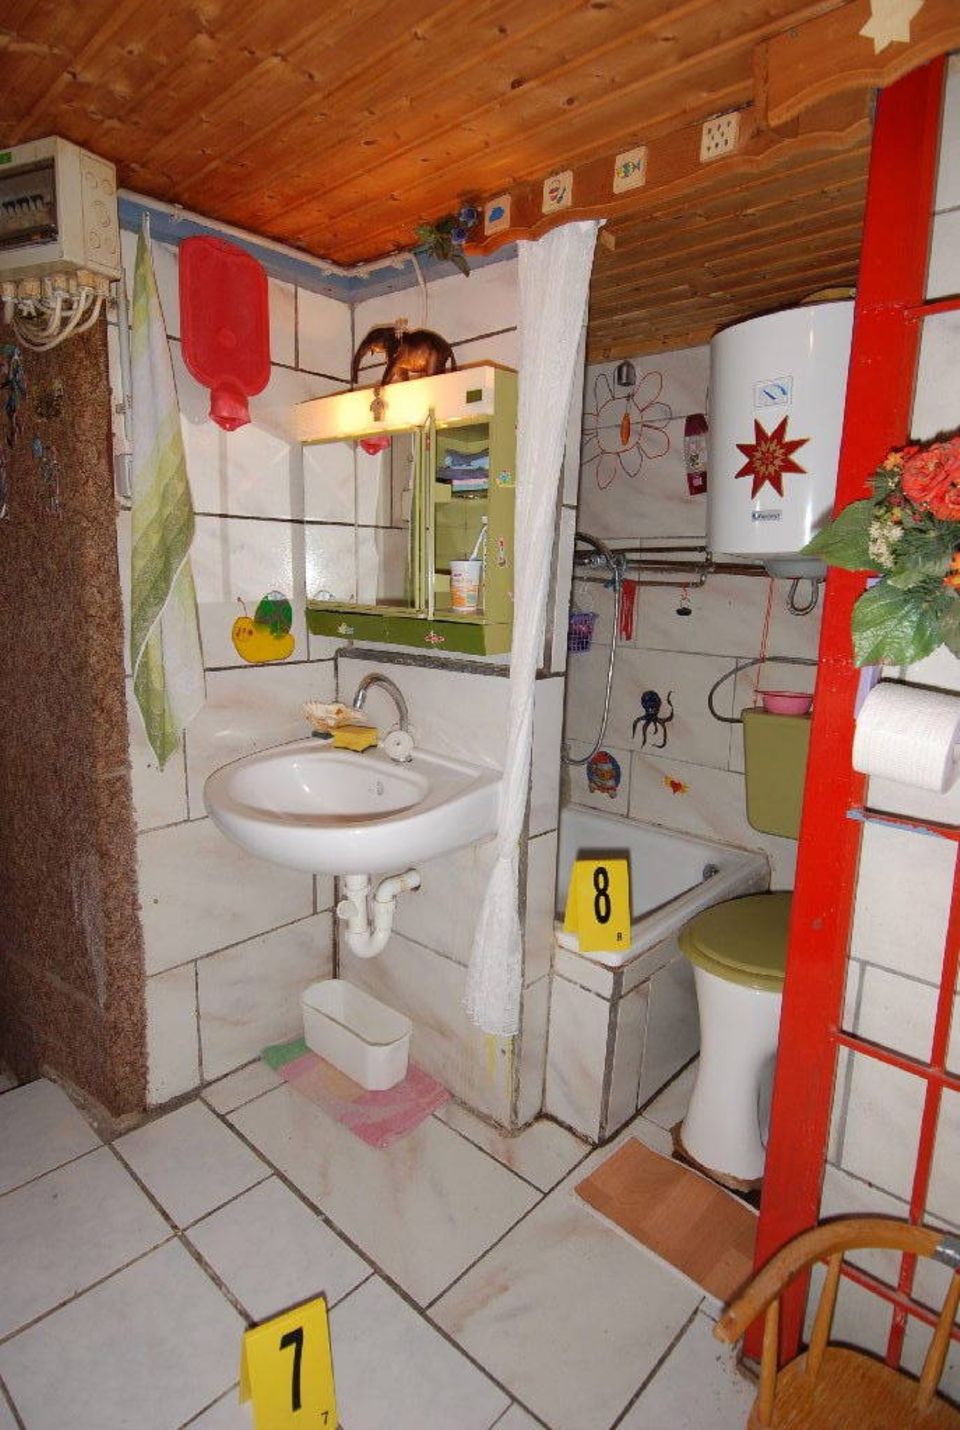 Waschbecken, Dusche mit Boiler, Toilette – alles hatte Josef Fritzl selbst eingebaut